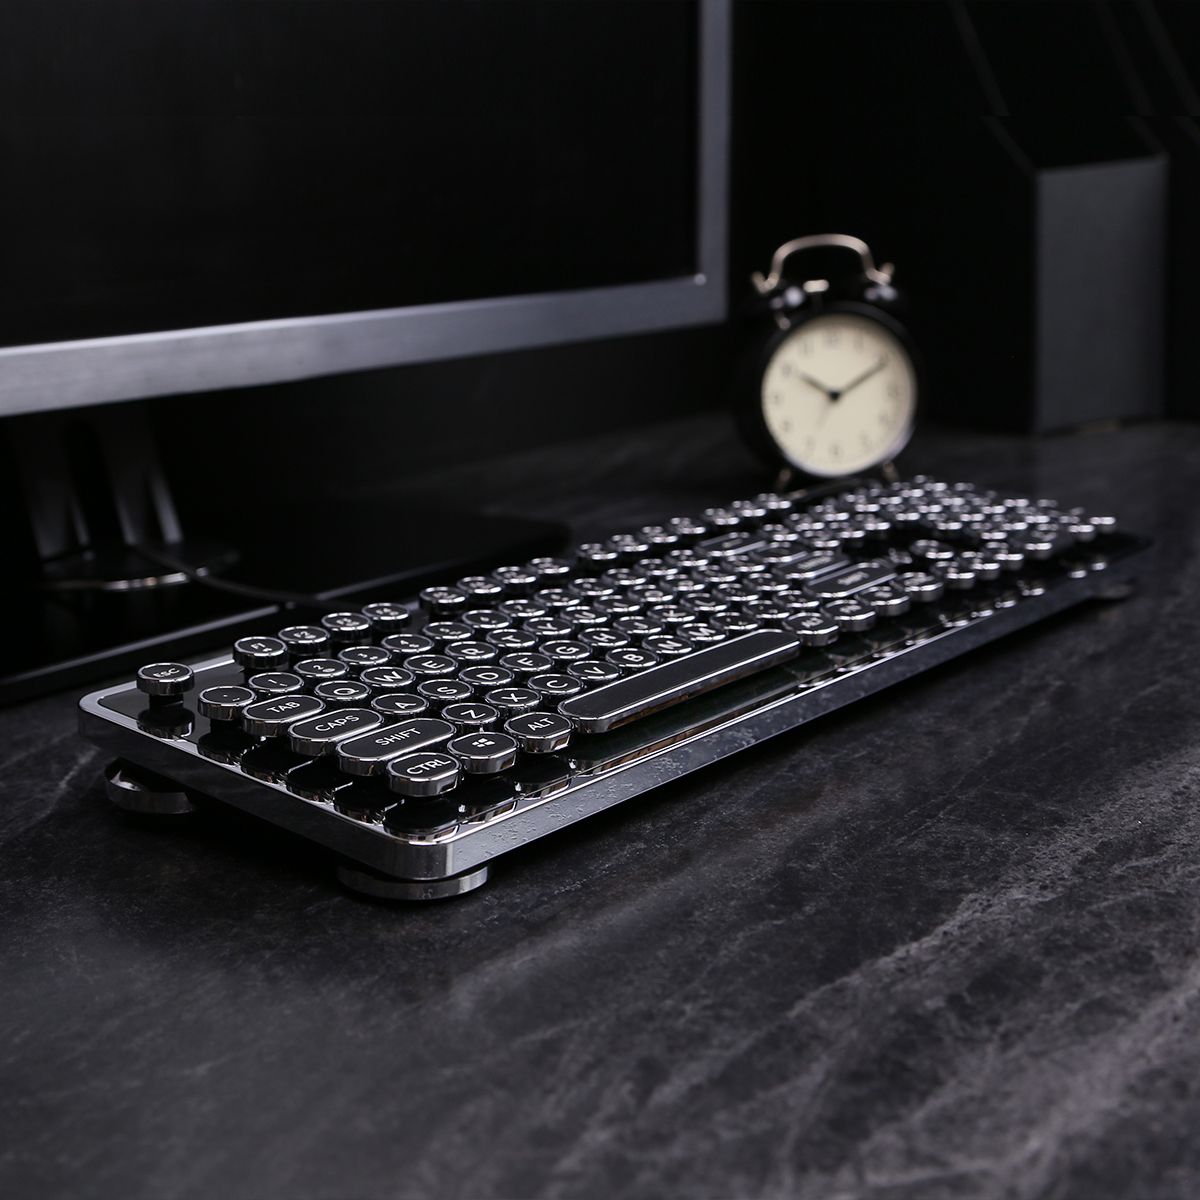 MK Retro Keyboard